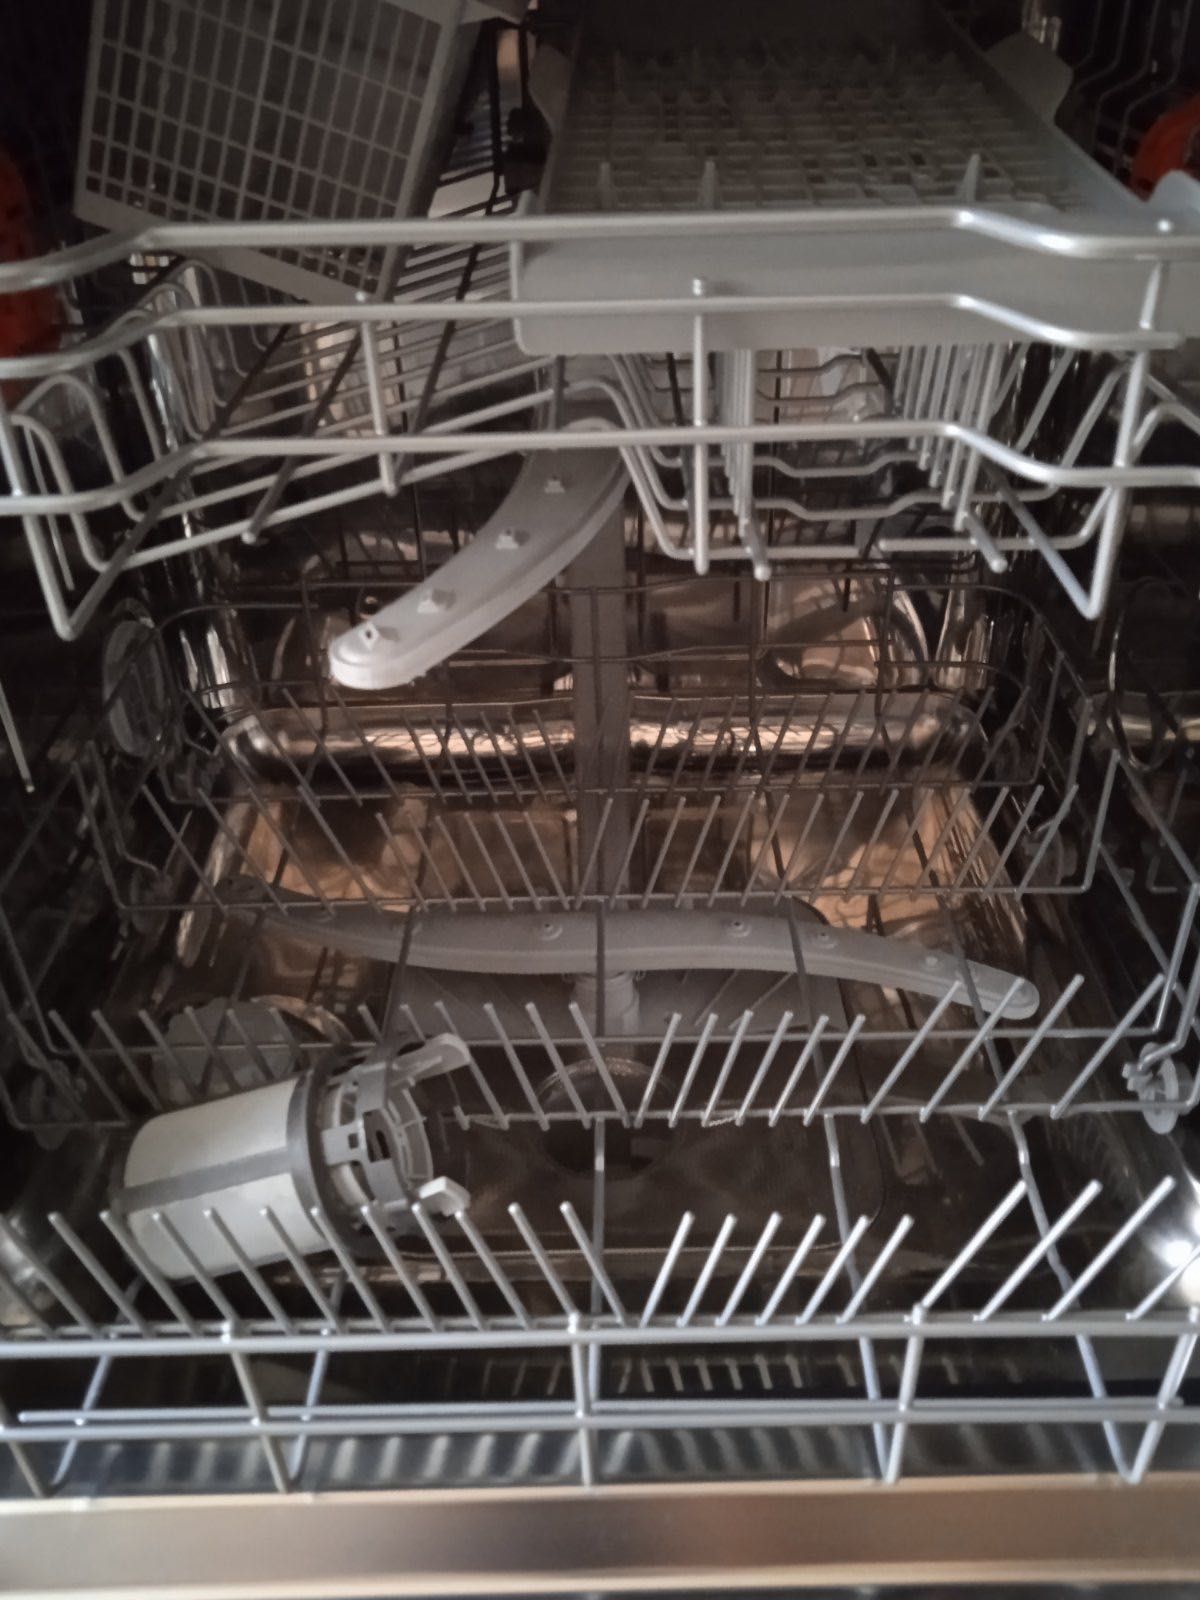 Вбудована посудомийна машина HOTPOINT ARISTON HI 5010 C